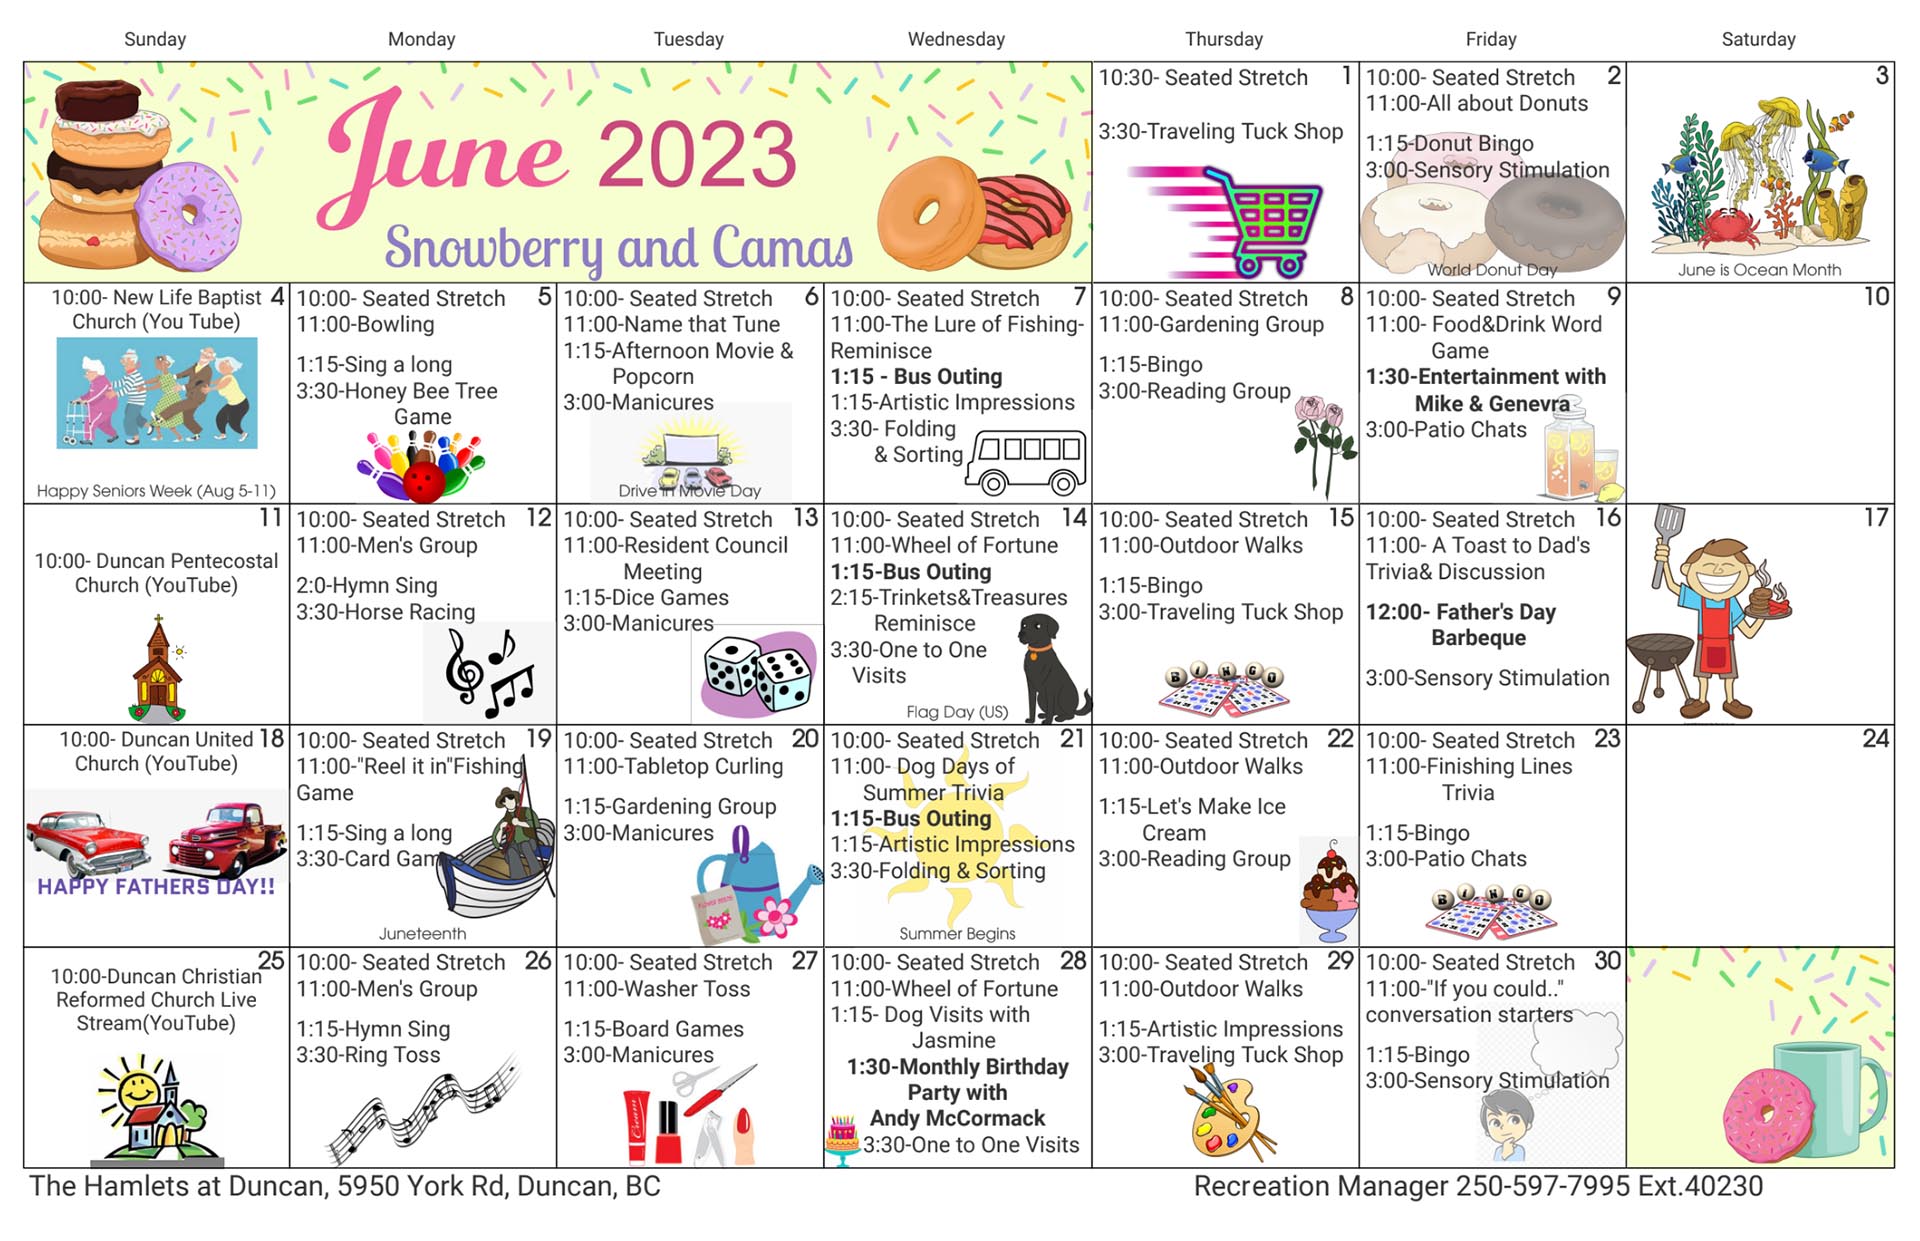 June 2023 Snowberry and Camas Calendar